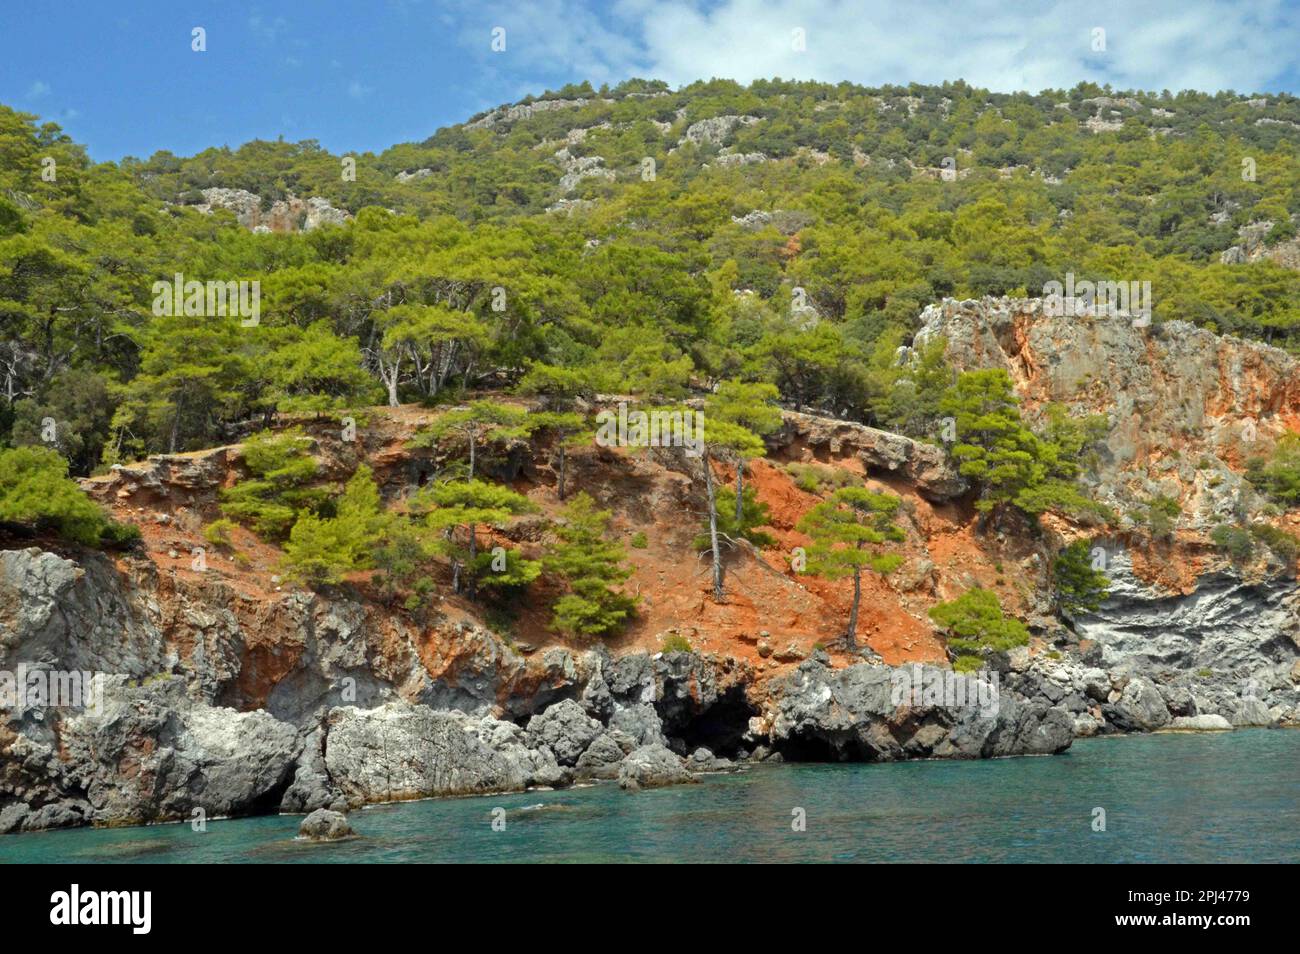 Türkei, Antalya, Lycia: Der winzige Strand, das türkisfarbene Wasser und die lebhaften Klippen der Asikoy Bay, die eine reiche Unterwasserwelt hat. Stockfoto